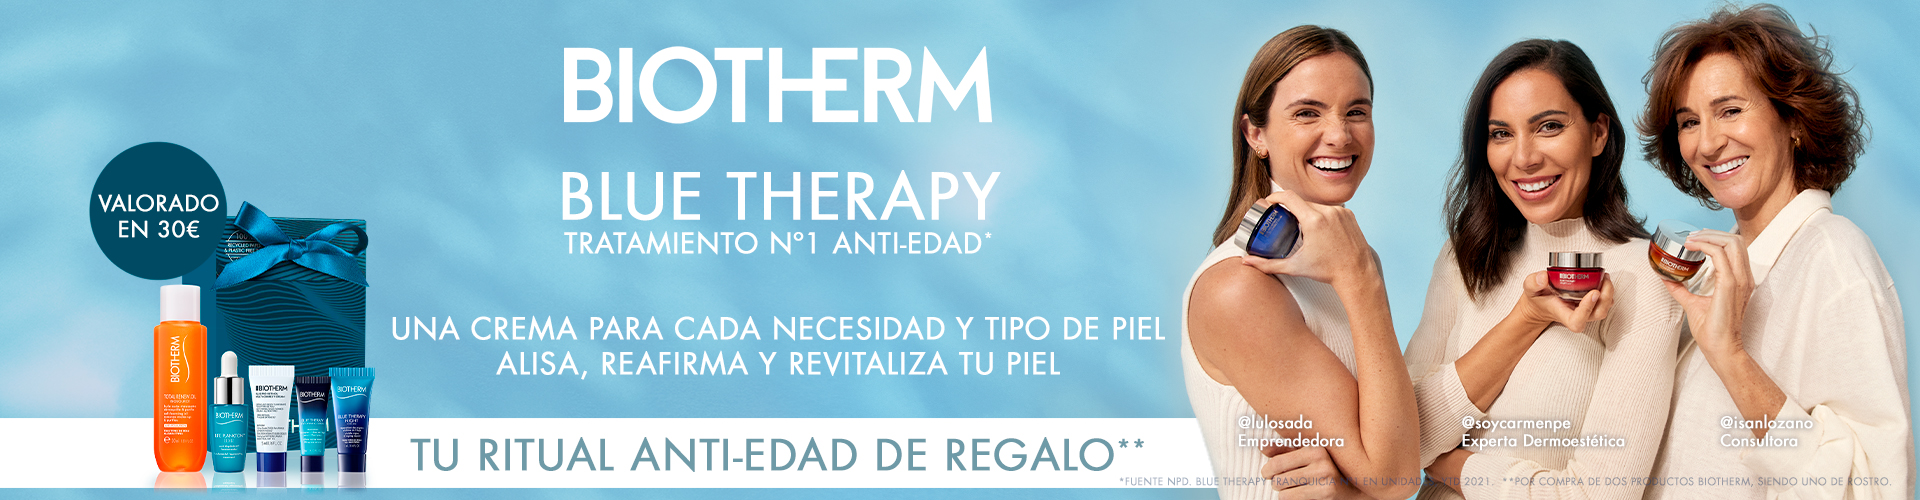 Biotherm | Blue Therapy Tratamiento Nº1 Antiedad | Prieto.es